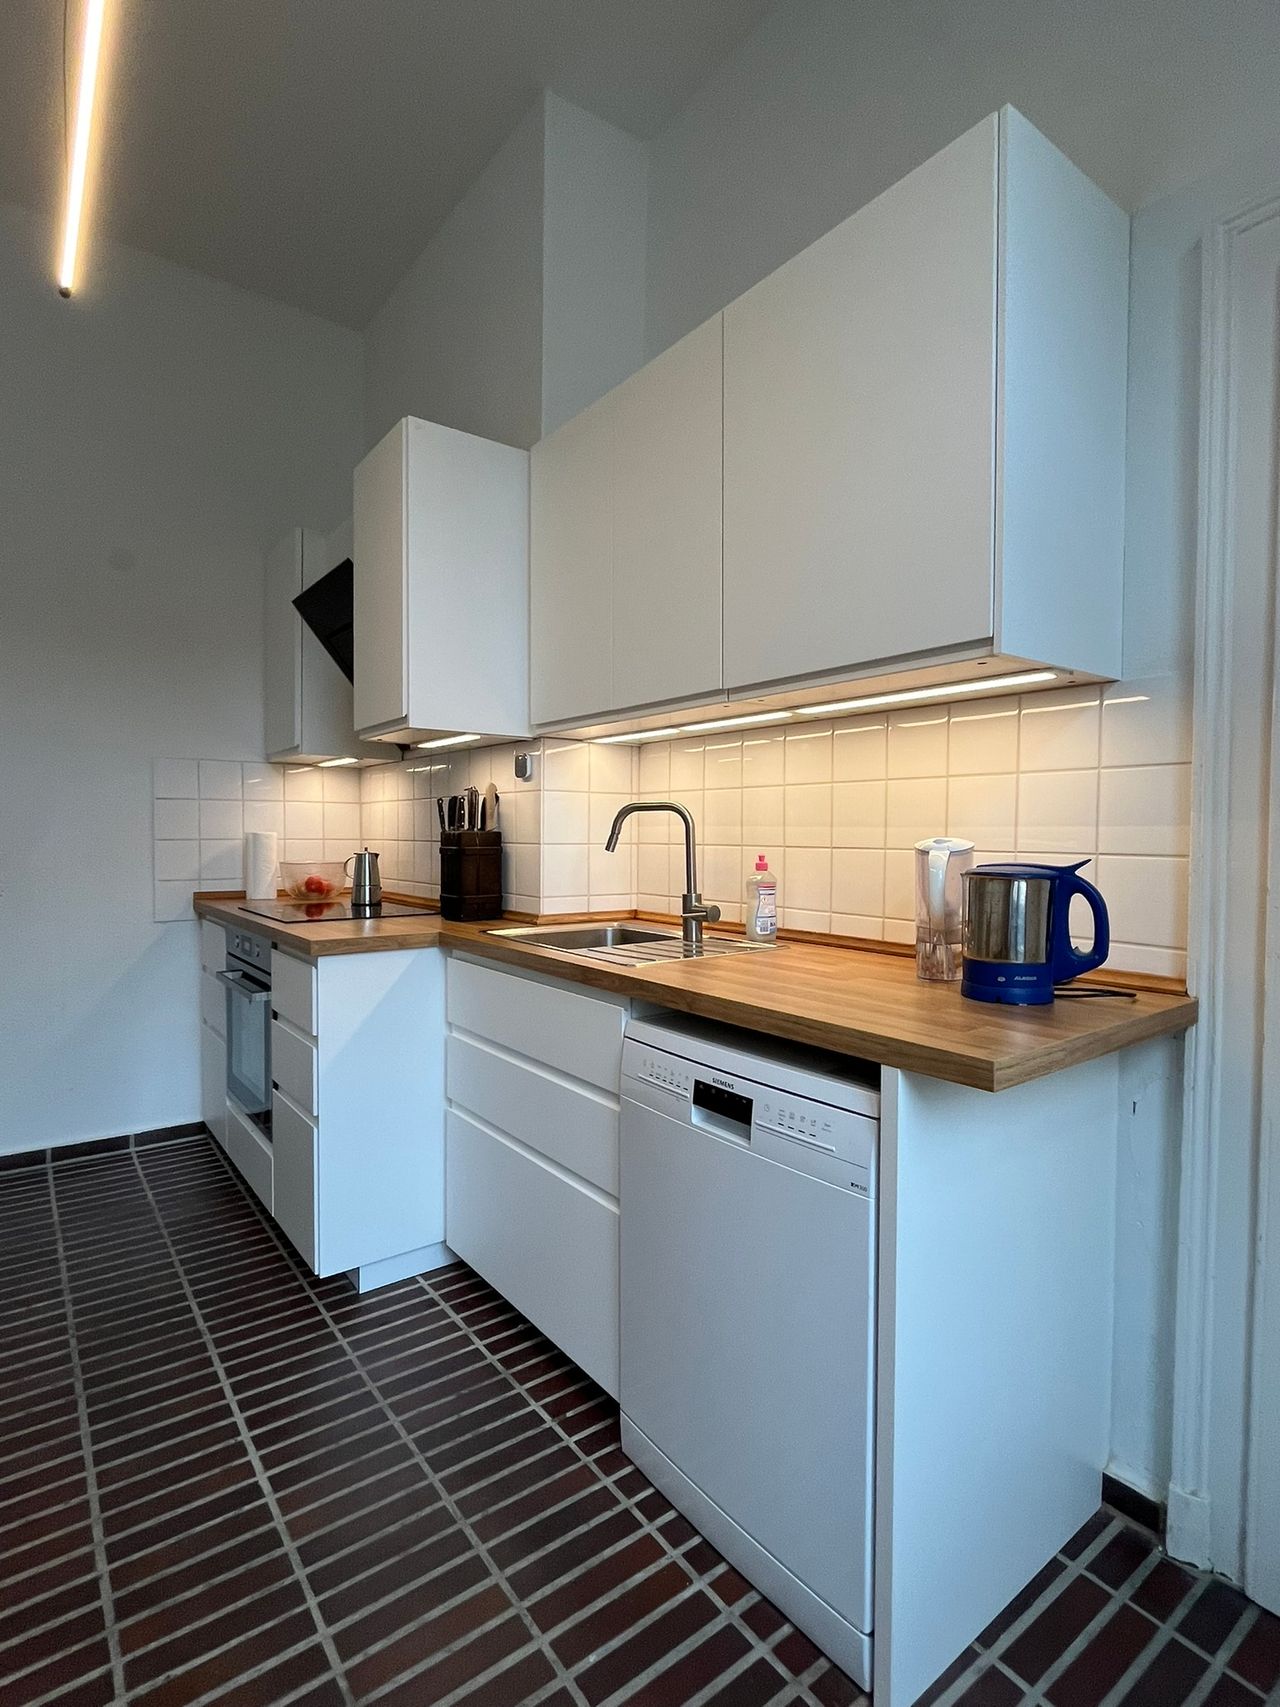 Updated 4 room apartment at Lindener Marktplatz